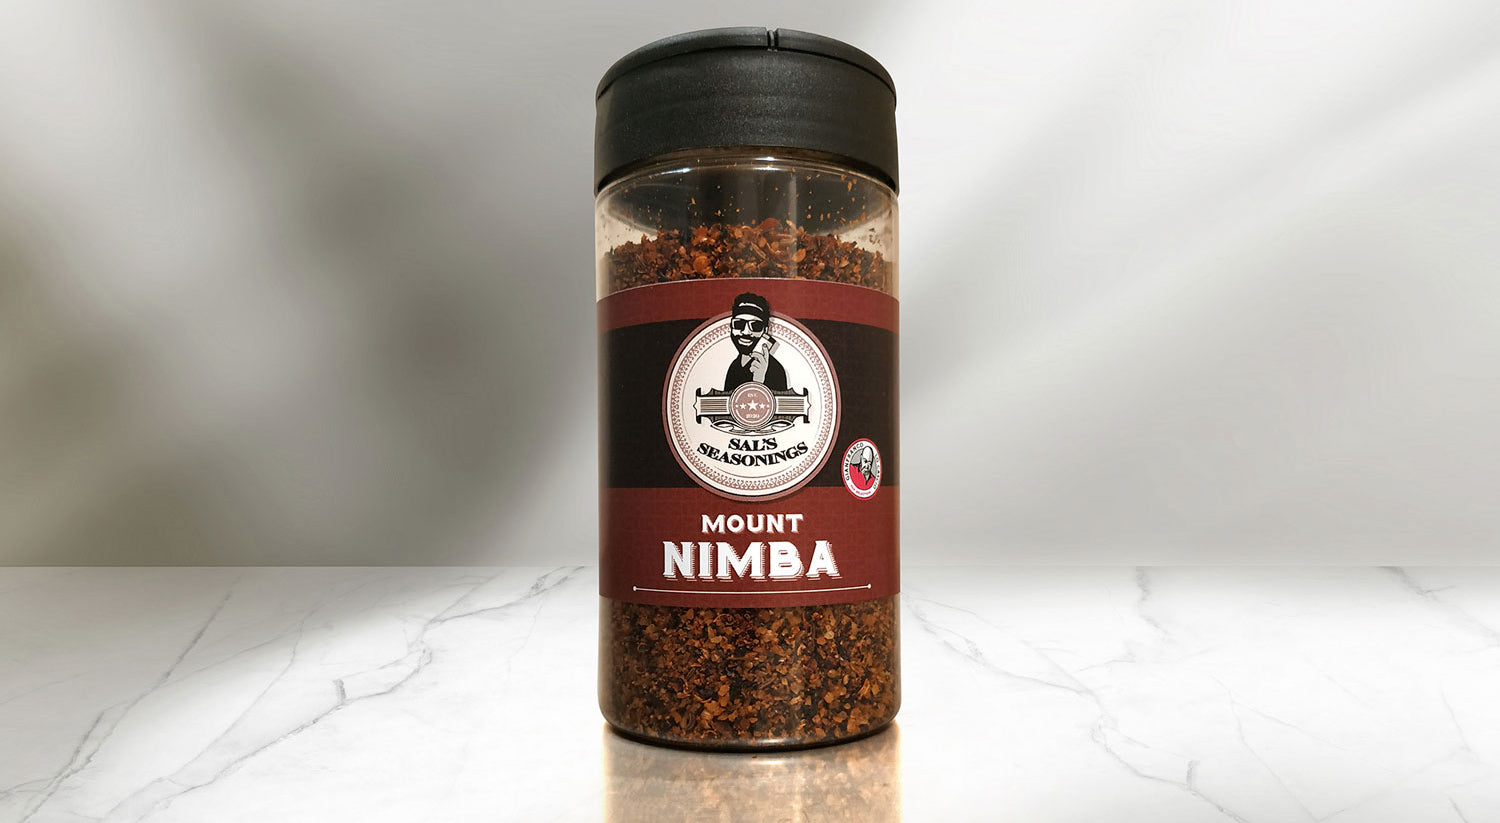 Sal's Seasoning - Mount Nimba Rub - 190g